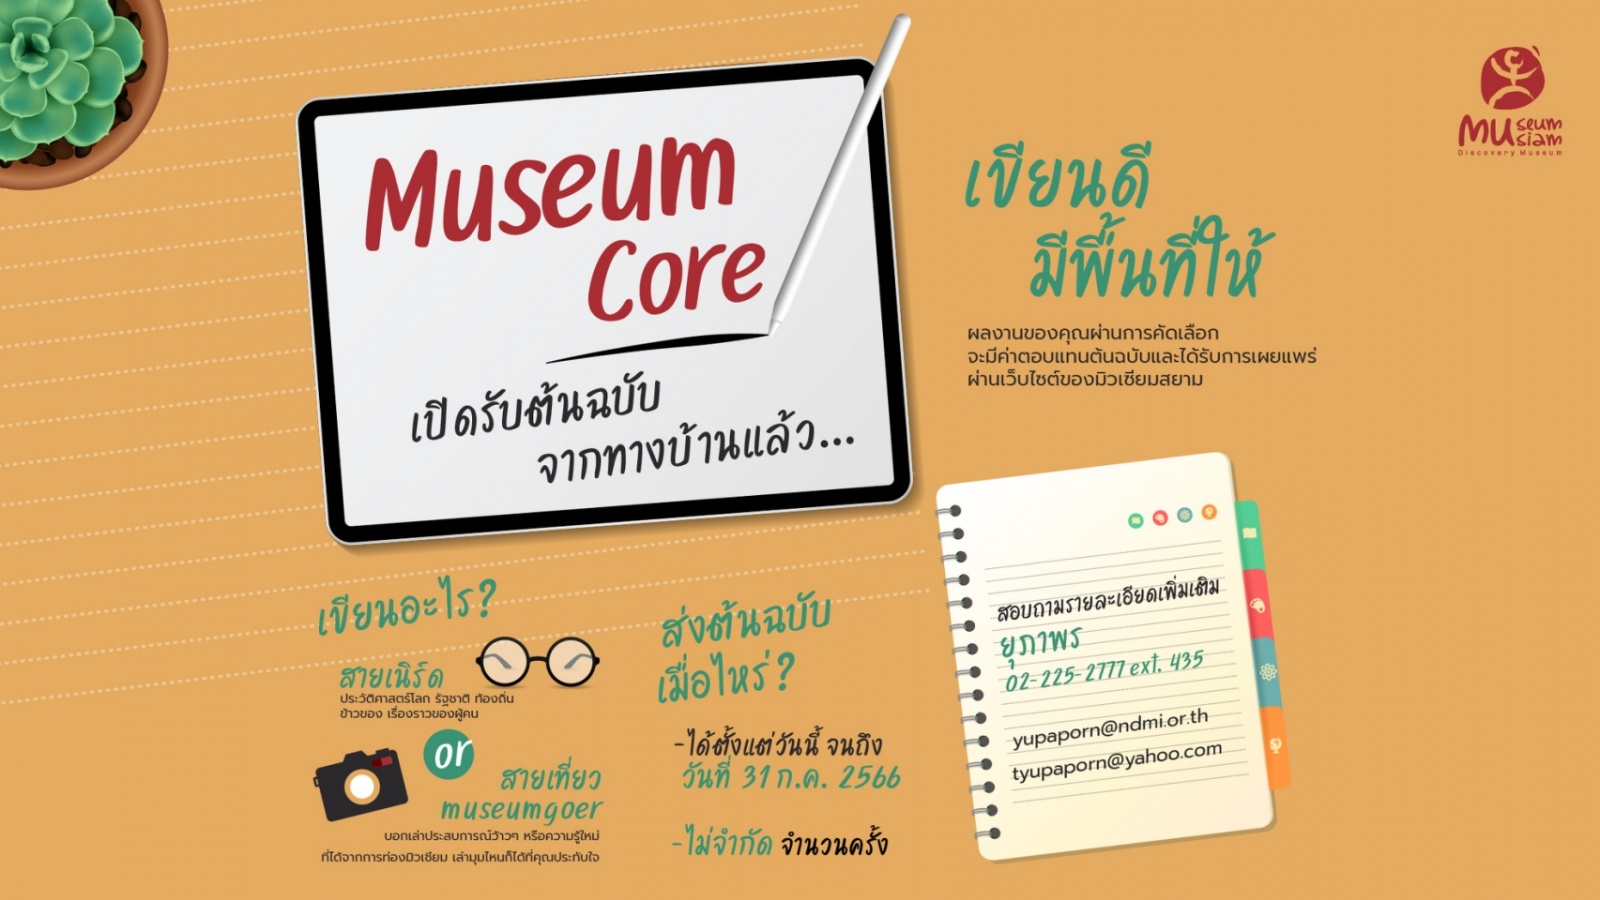 Museum Core “เปิดรับต้นฉบับจากทางบ้าน”